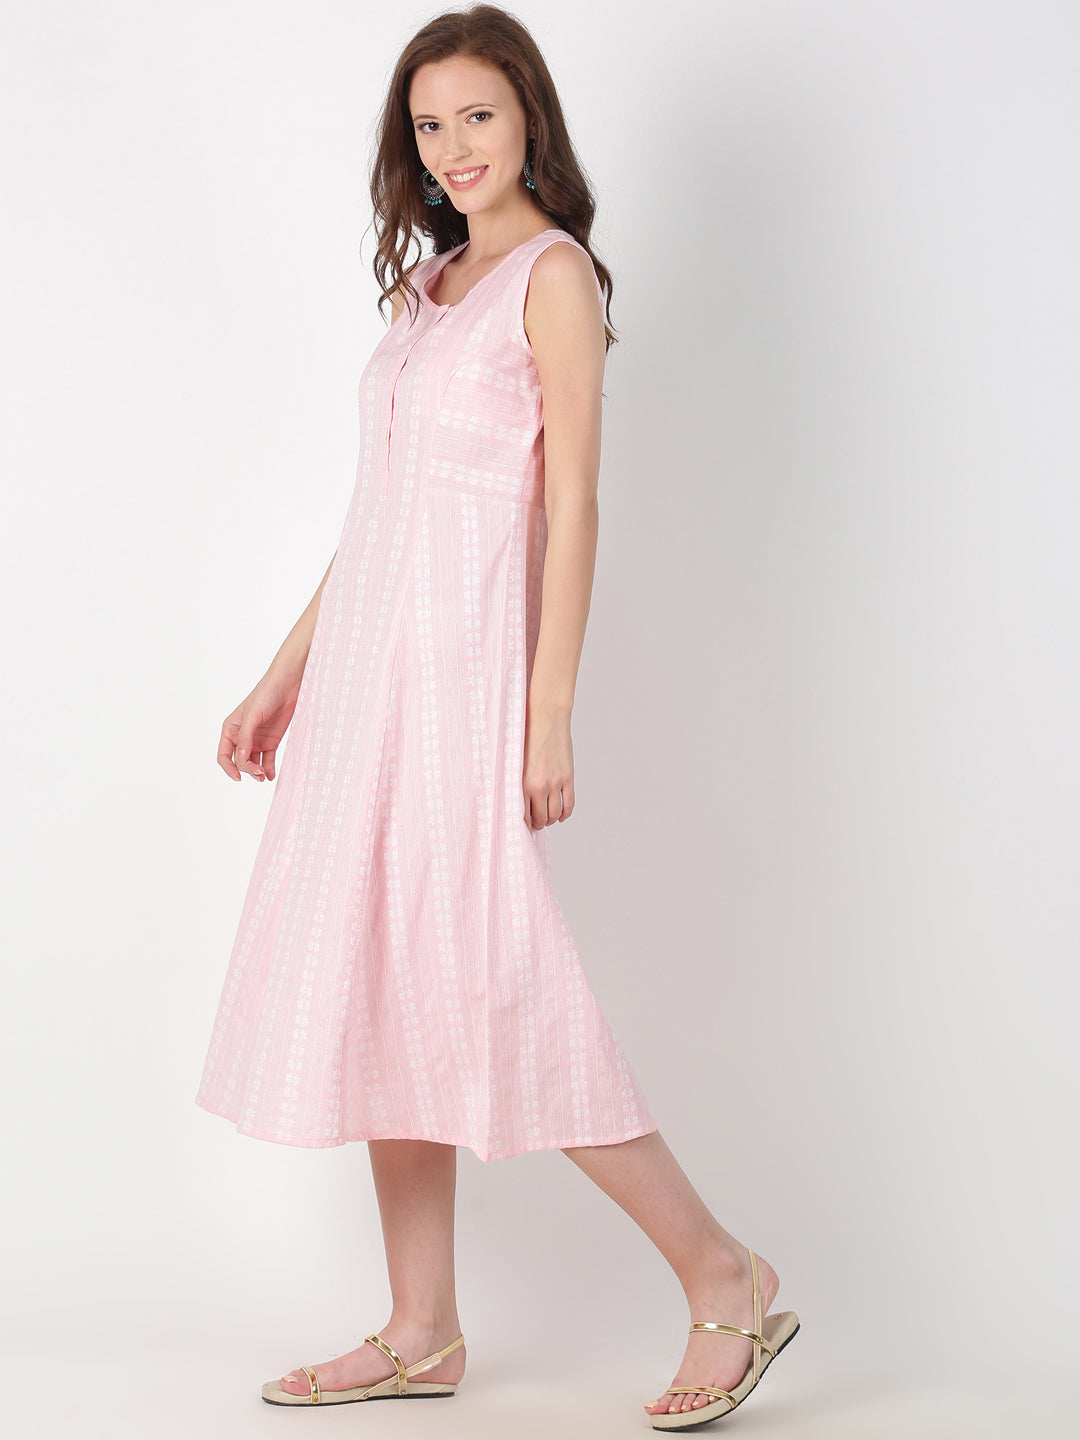 Light Pink Cotton Woven Design A-Line Dress